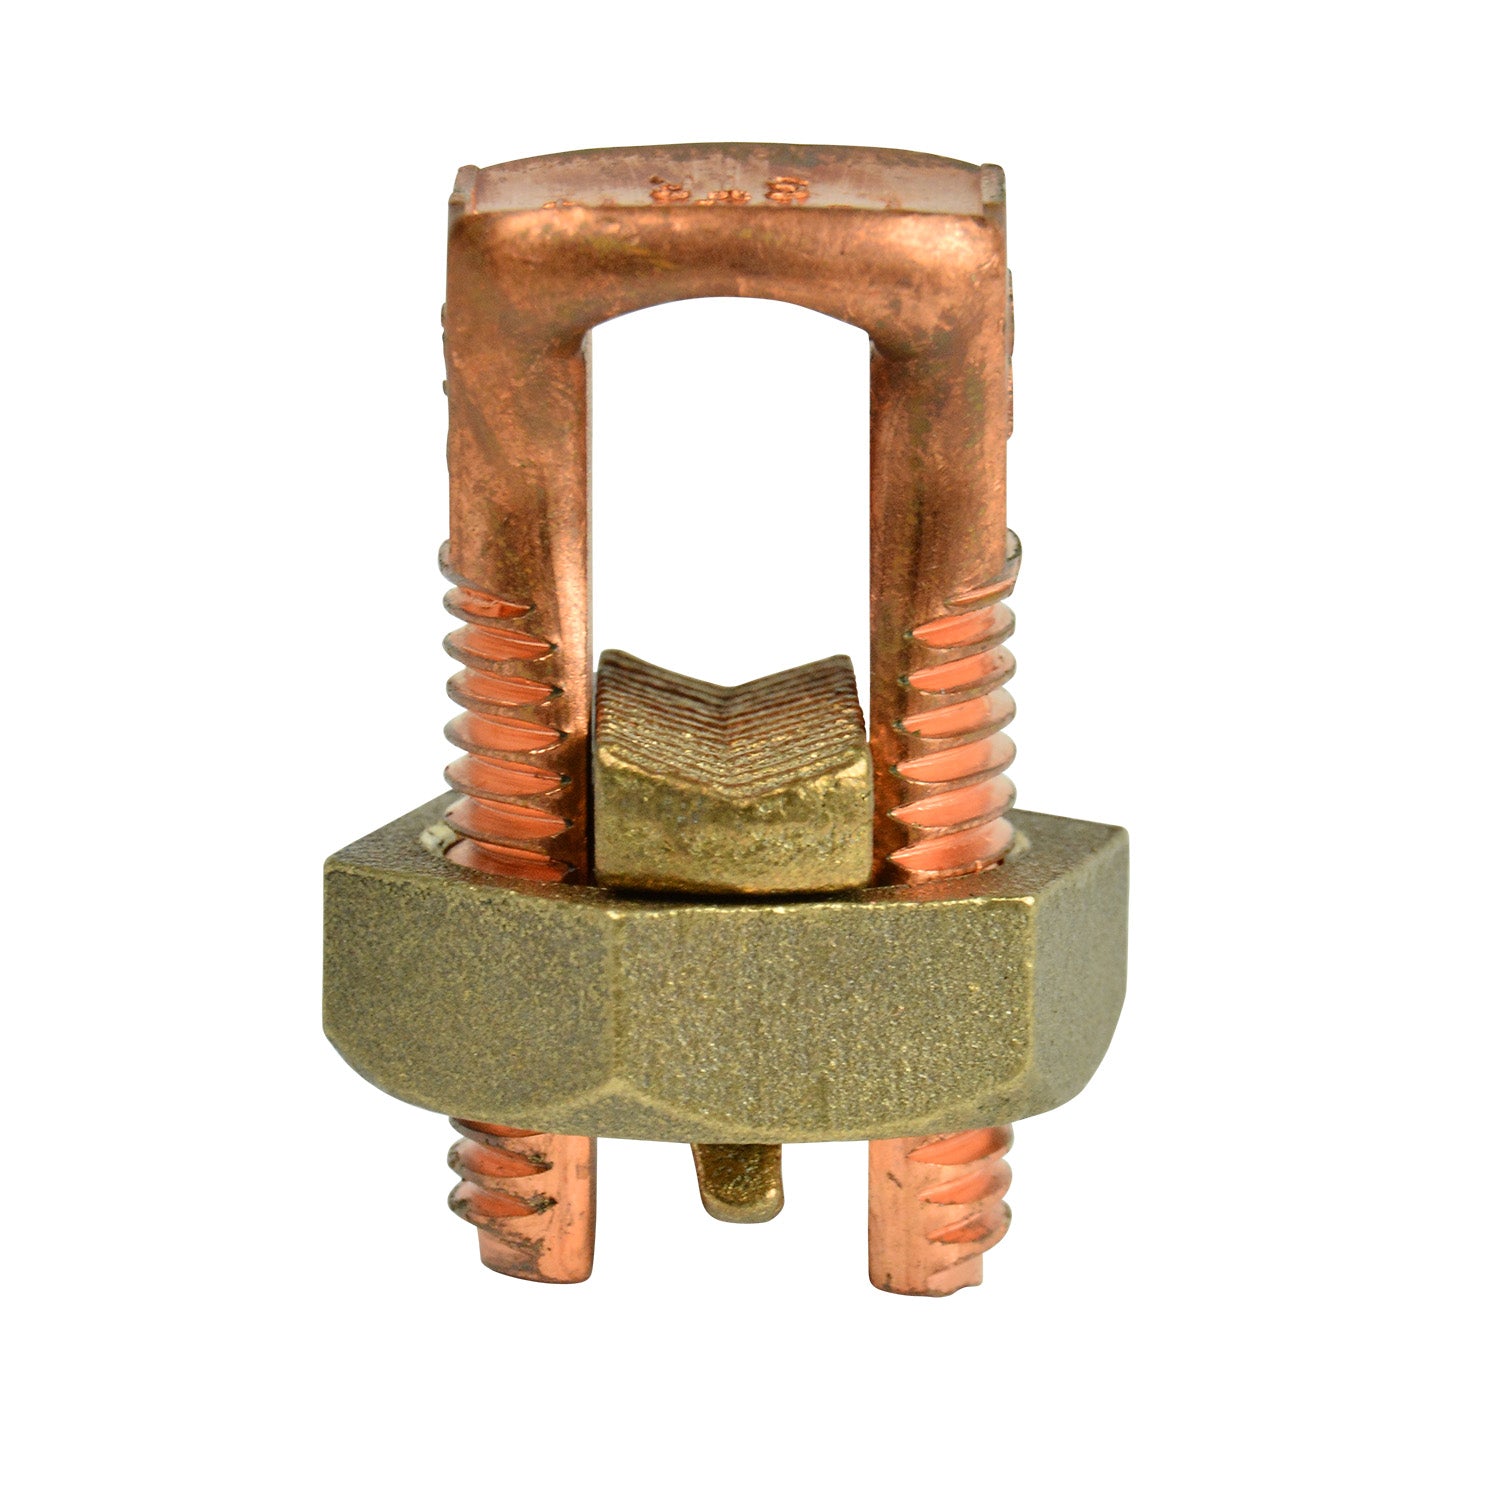 Gardner Bender GSBC-1/0 #4-#0 AWG Solid Copper Split Bolt Connector (2 Packs)